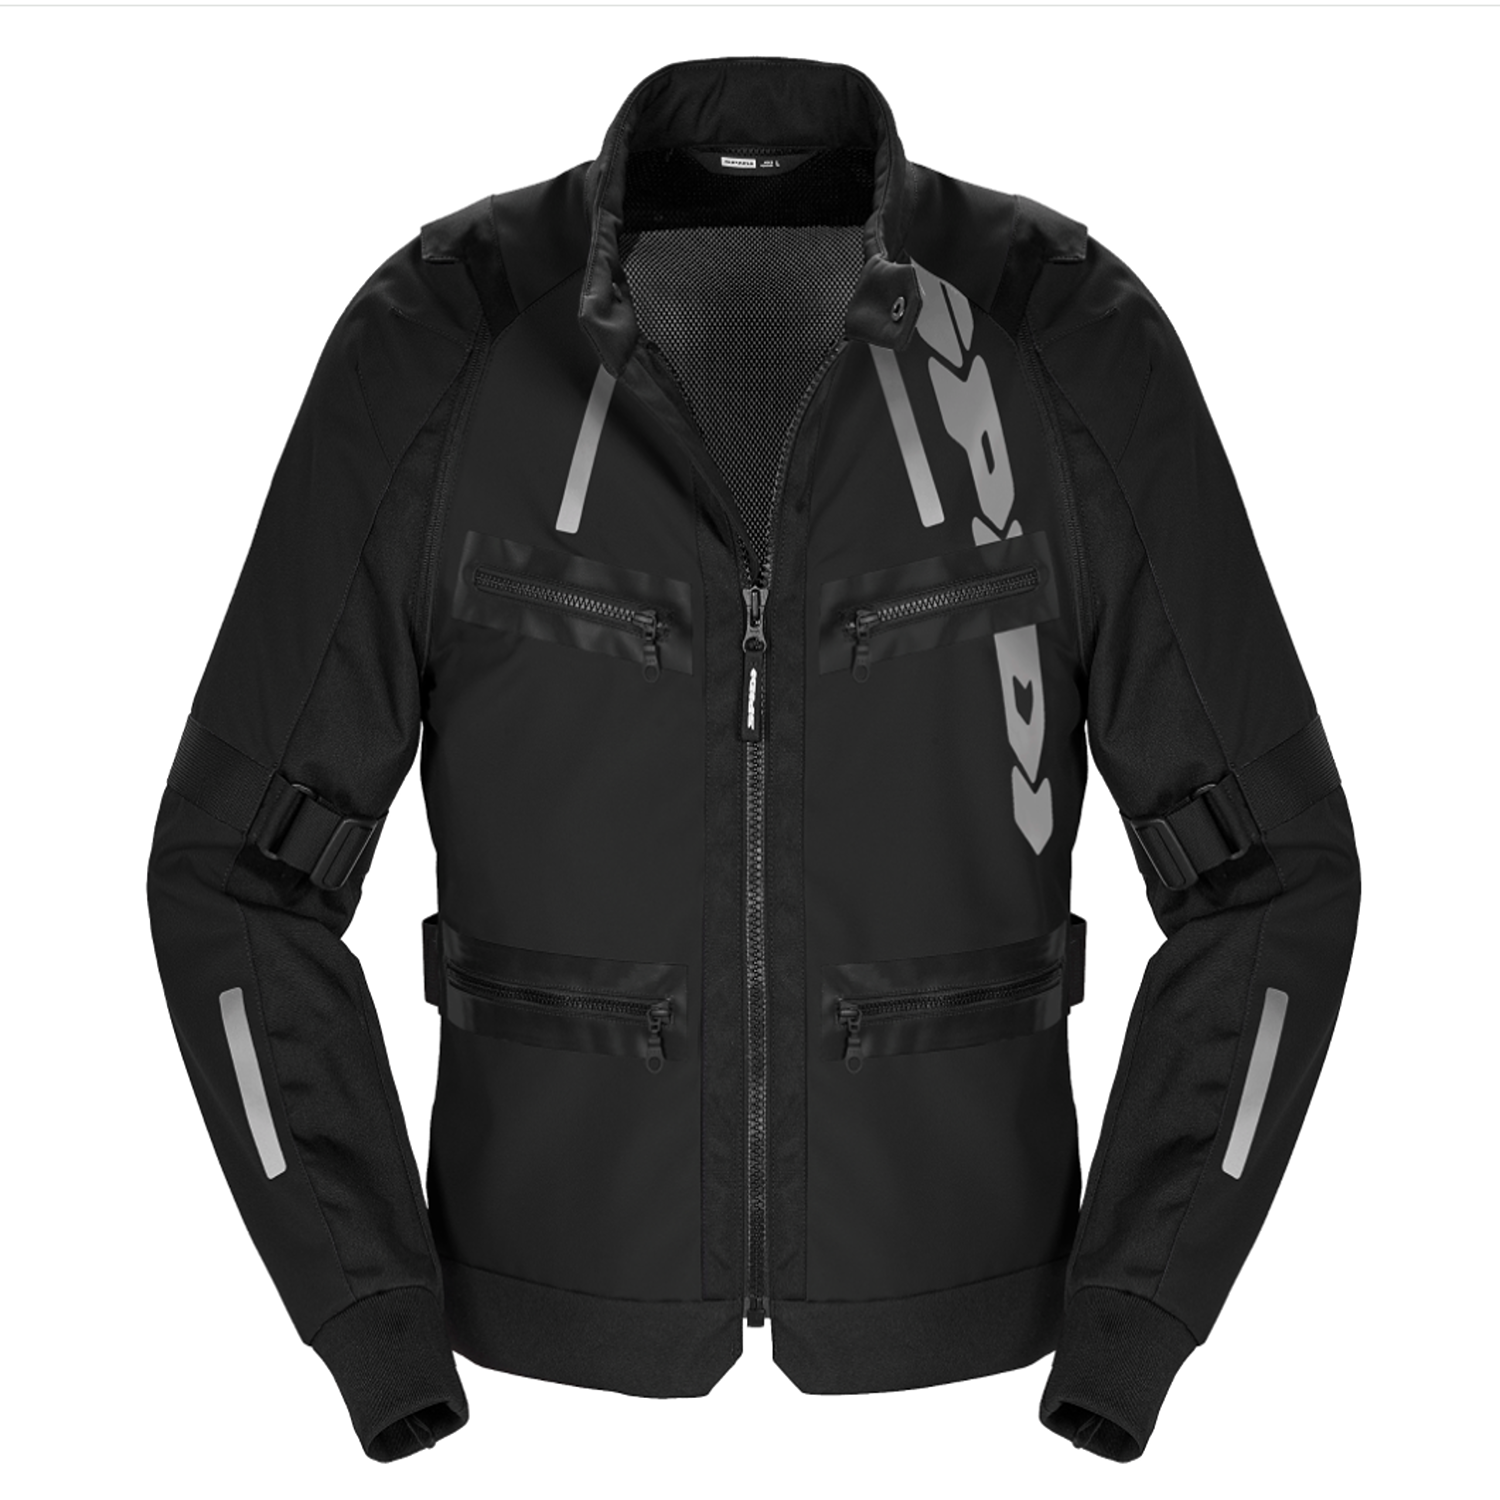 Image of EU Spidi Enduro Pro Jacket Black Taille 3XL